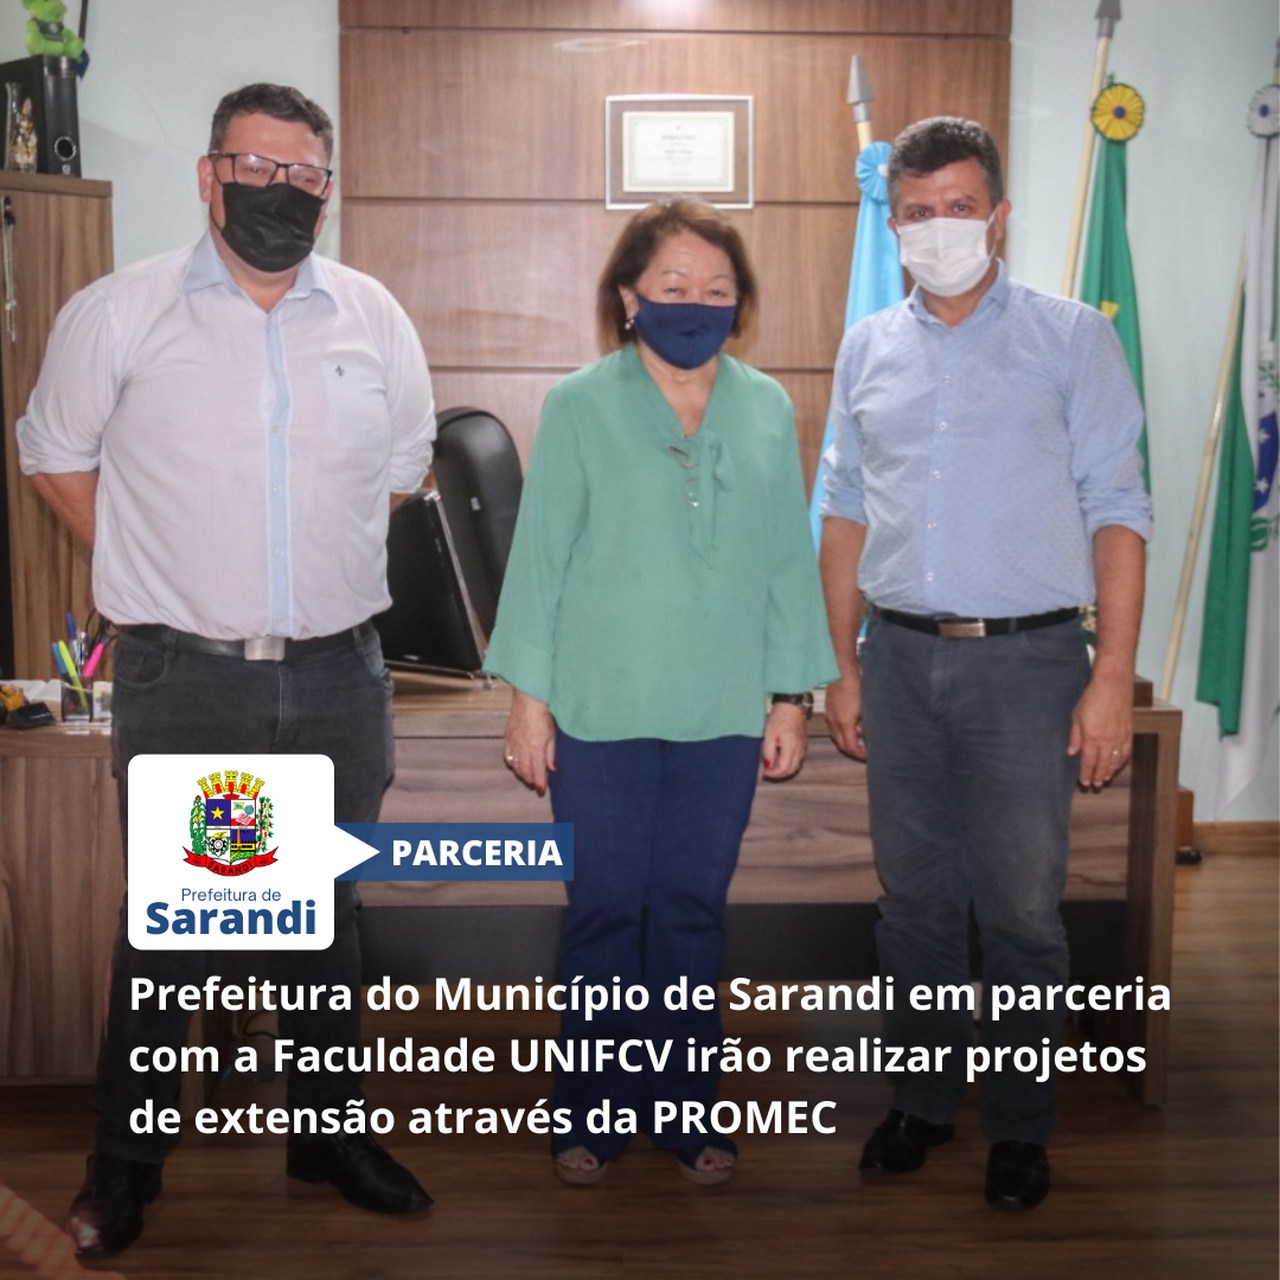 Prefeitura do Município de Sarandi em parceria com a Faculdade UNIFCV irão realizar projetos de extensão através da PROMEC